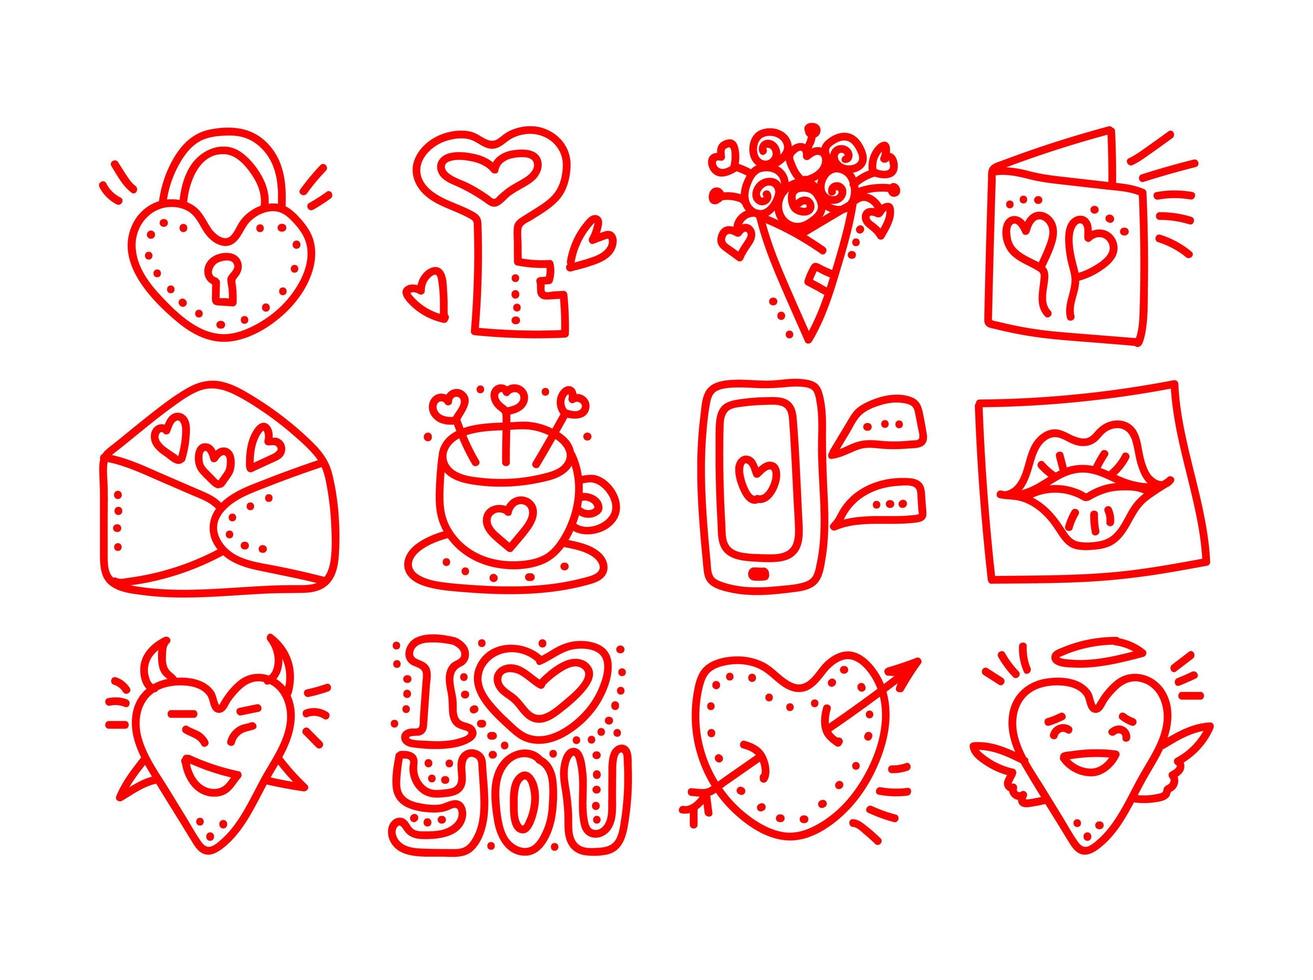 conjunto de ícones de vetor de doodle mão desenhada dia dos namorados. corações de amor de dia dos namorados, caneca, flores, telefone celular, lábios, cartas, anjo, bloqueio, demônio, ícones de mensagens